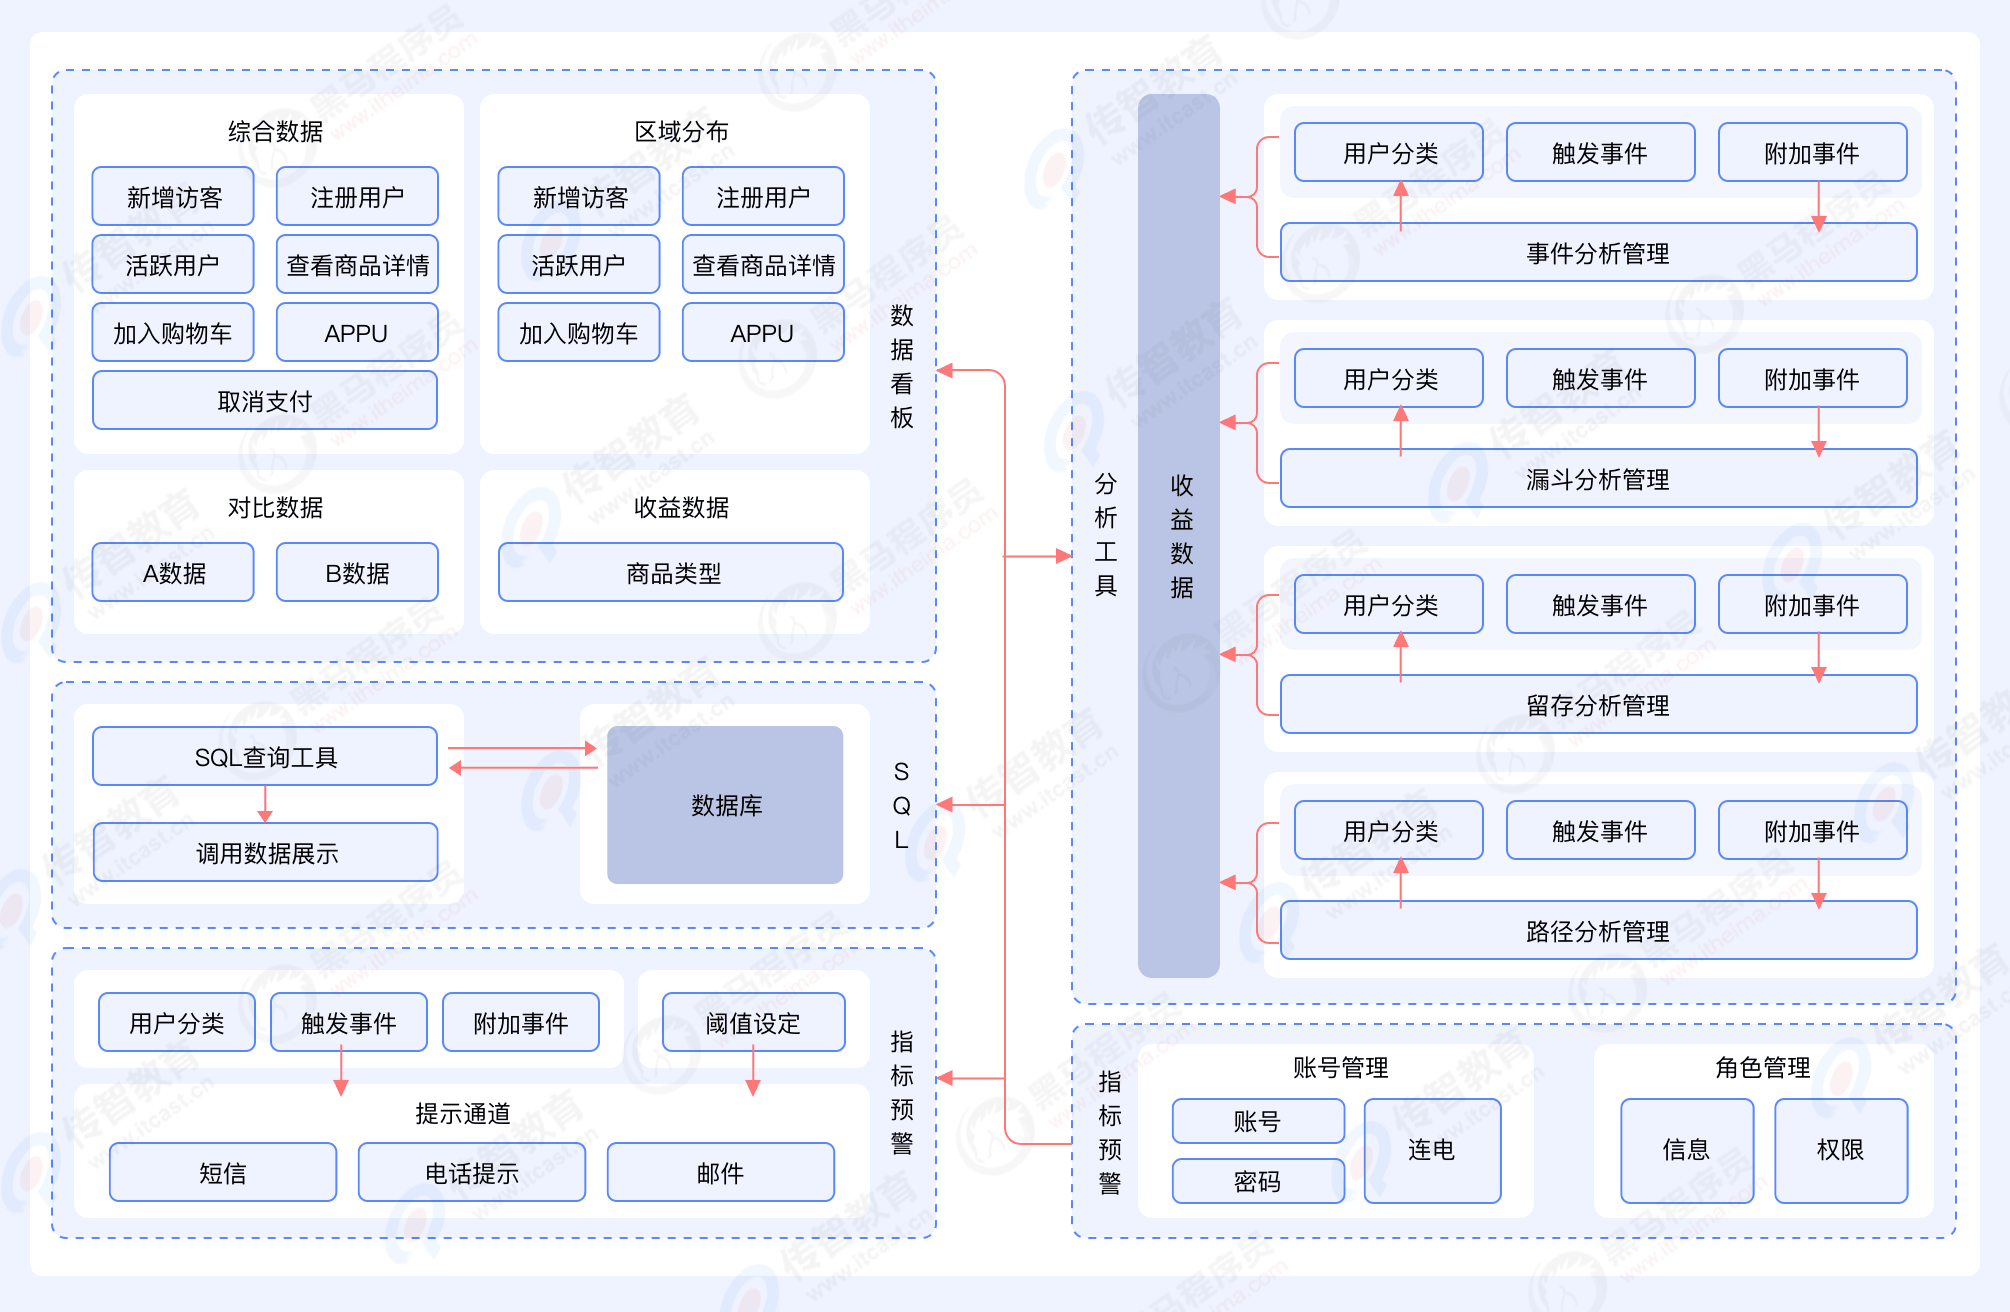 BI系统架构图